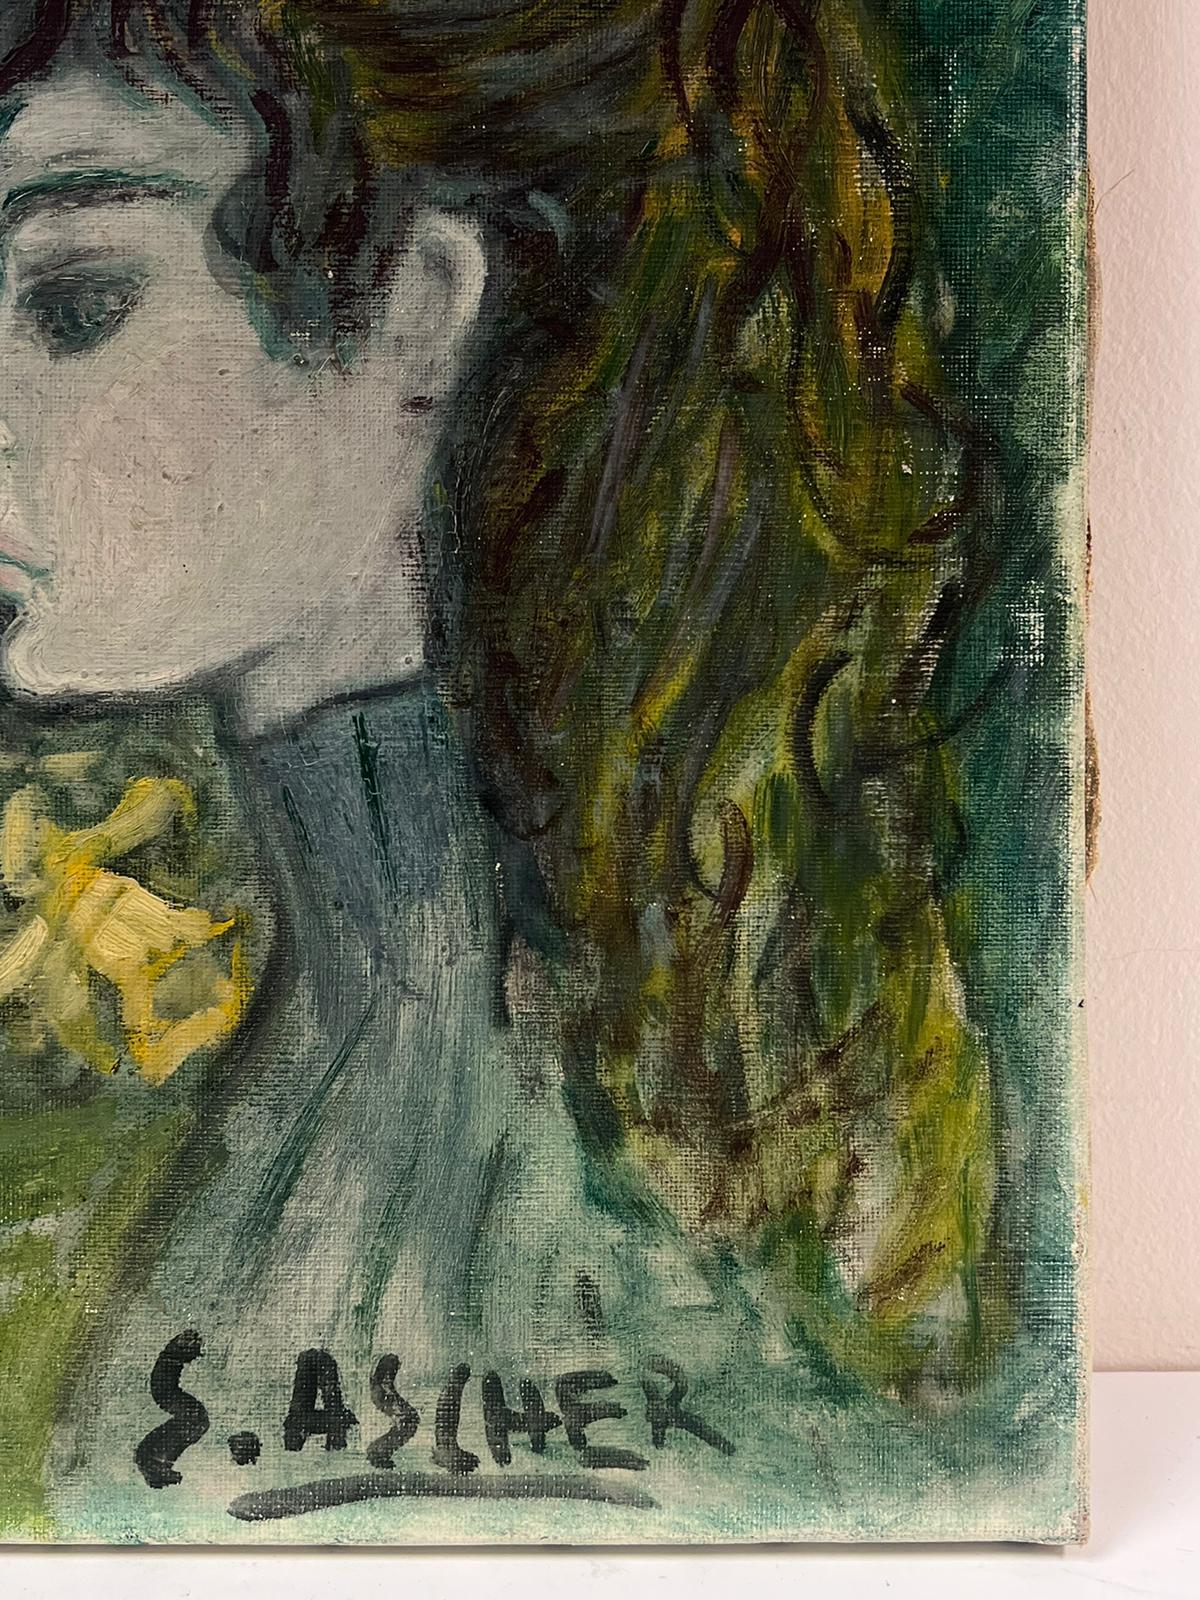 Porträt einer Dame
Französischer Künstler der Moderne, Mitte des 20.
S. Ascher
signiertes Öl auf Leinwand, ungerahmt
Leinwand: 16 x 13 Zoll
Provenienz: Privatsammlung, Paris
Zustand: sehr guter und gesunder Zustand 